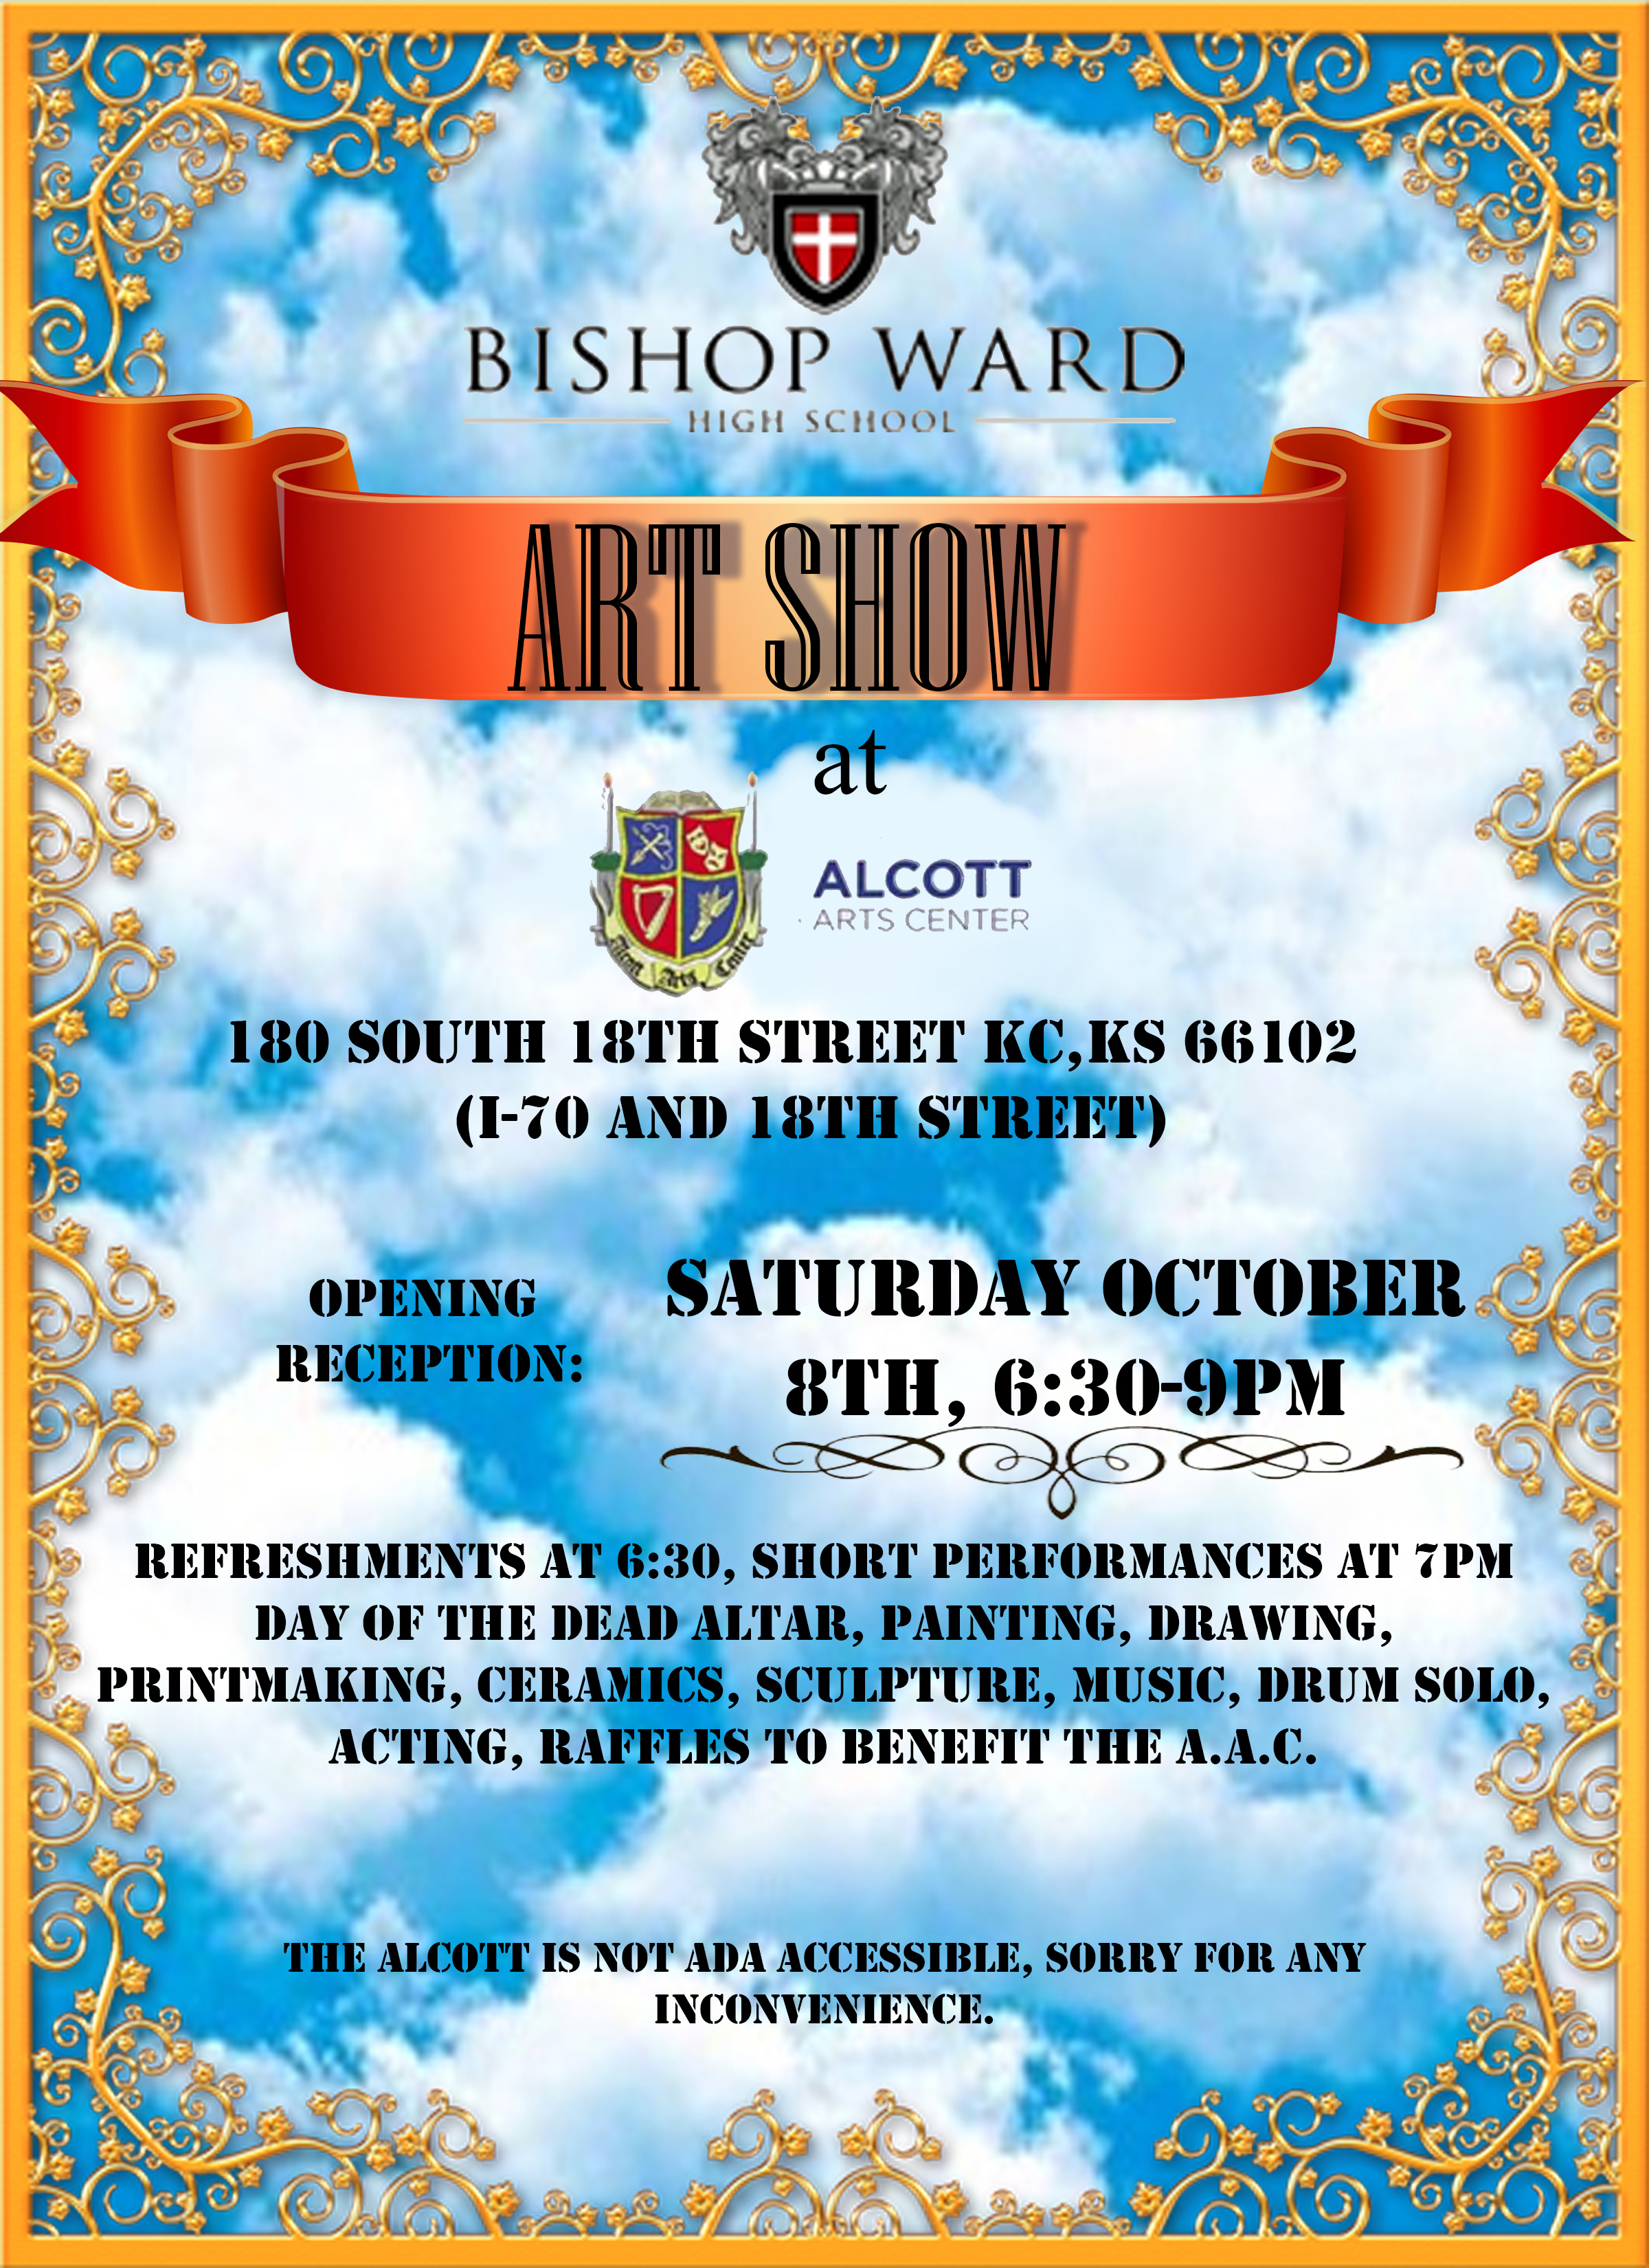 Bishop Ward Art Show Poster 10-8-2016 .jpg